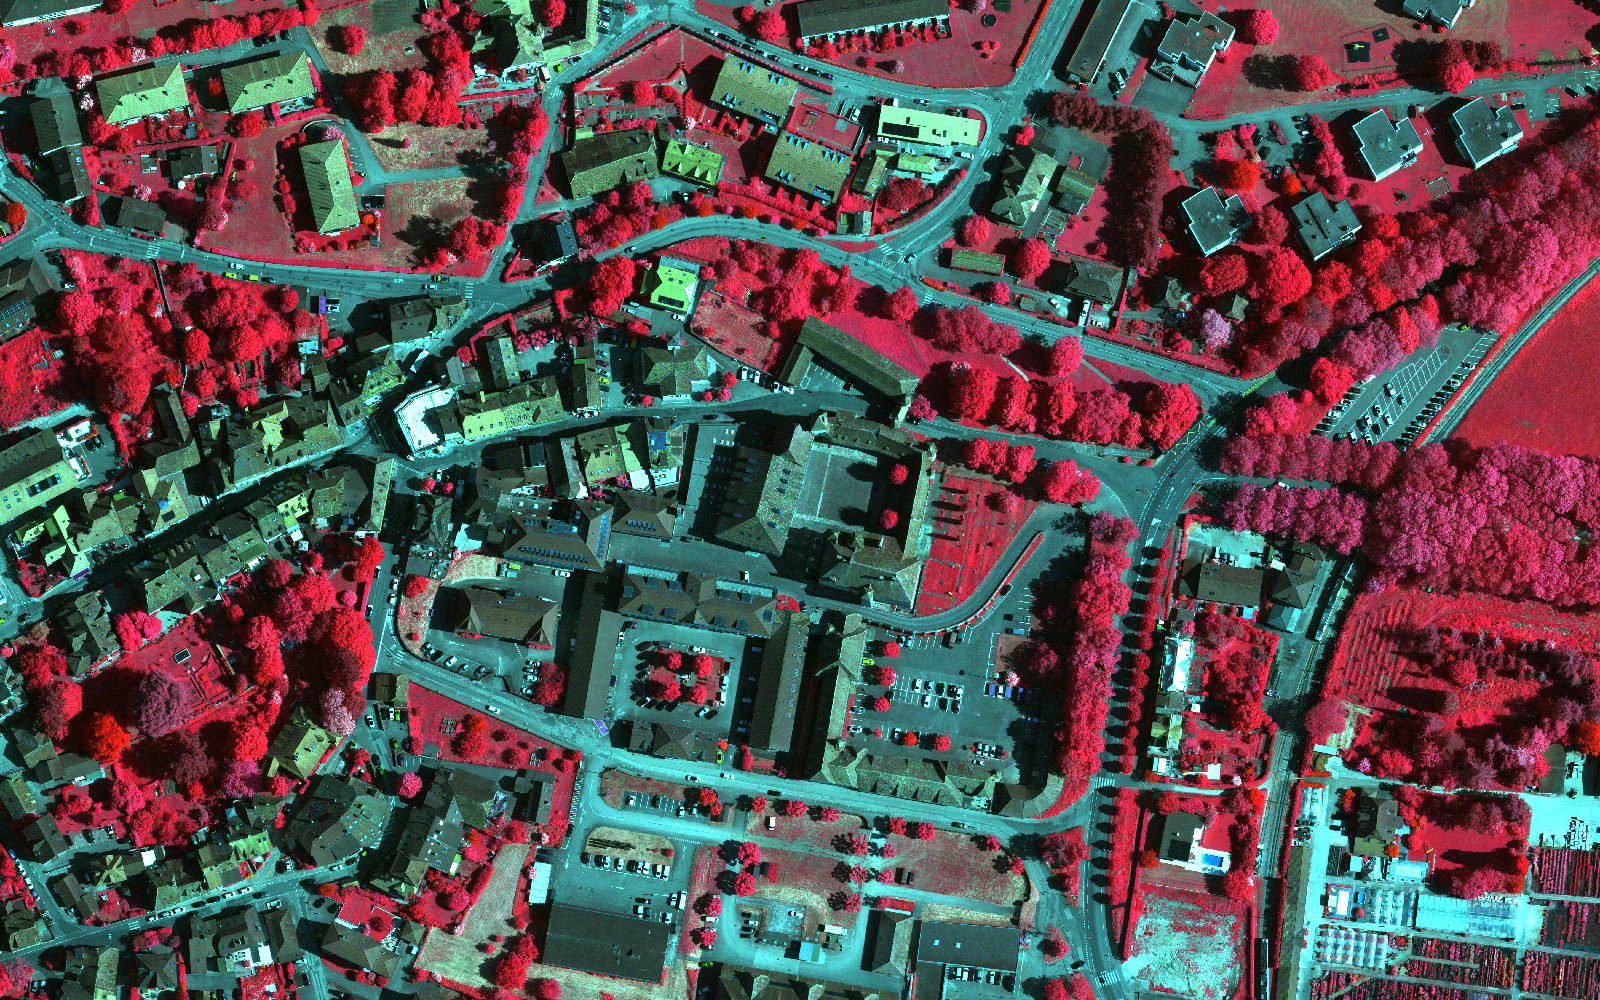 L'immagine mostra una veduta aerea a infrarossi del centro storico di Colombier (NE).